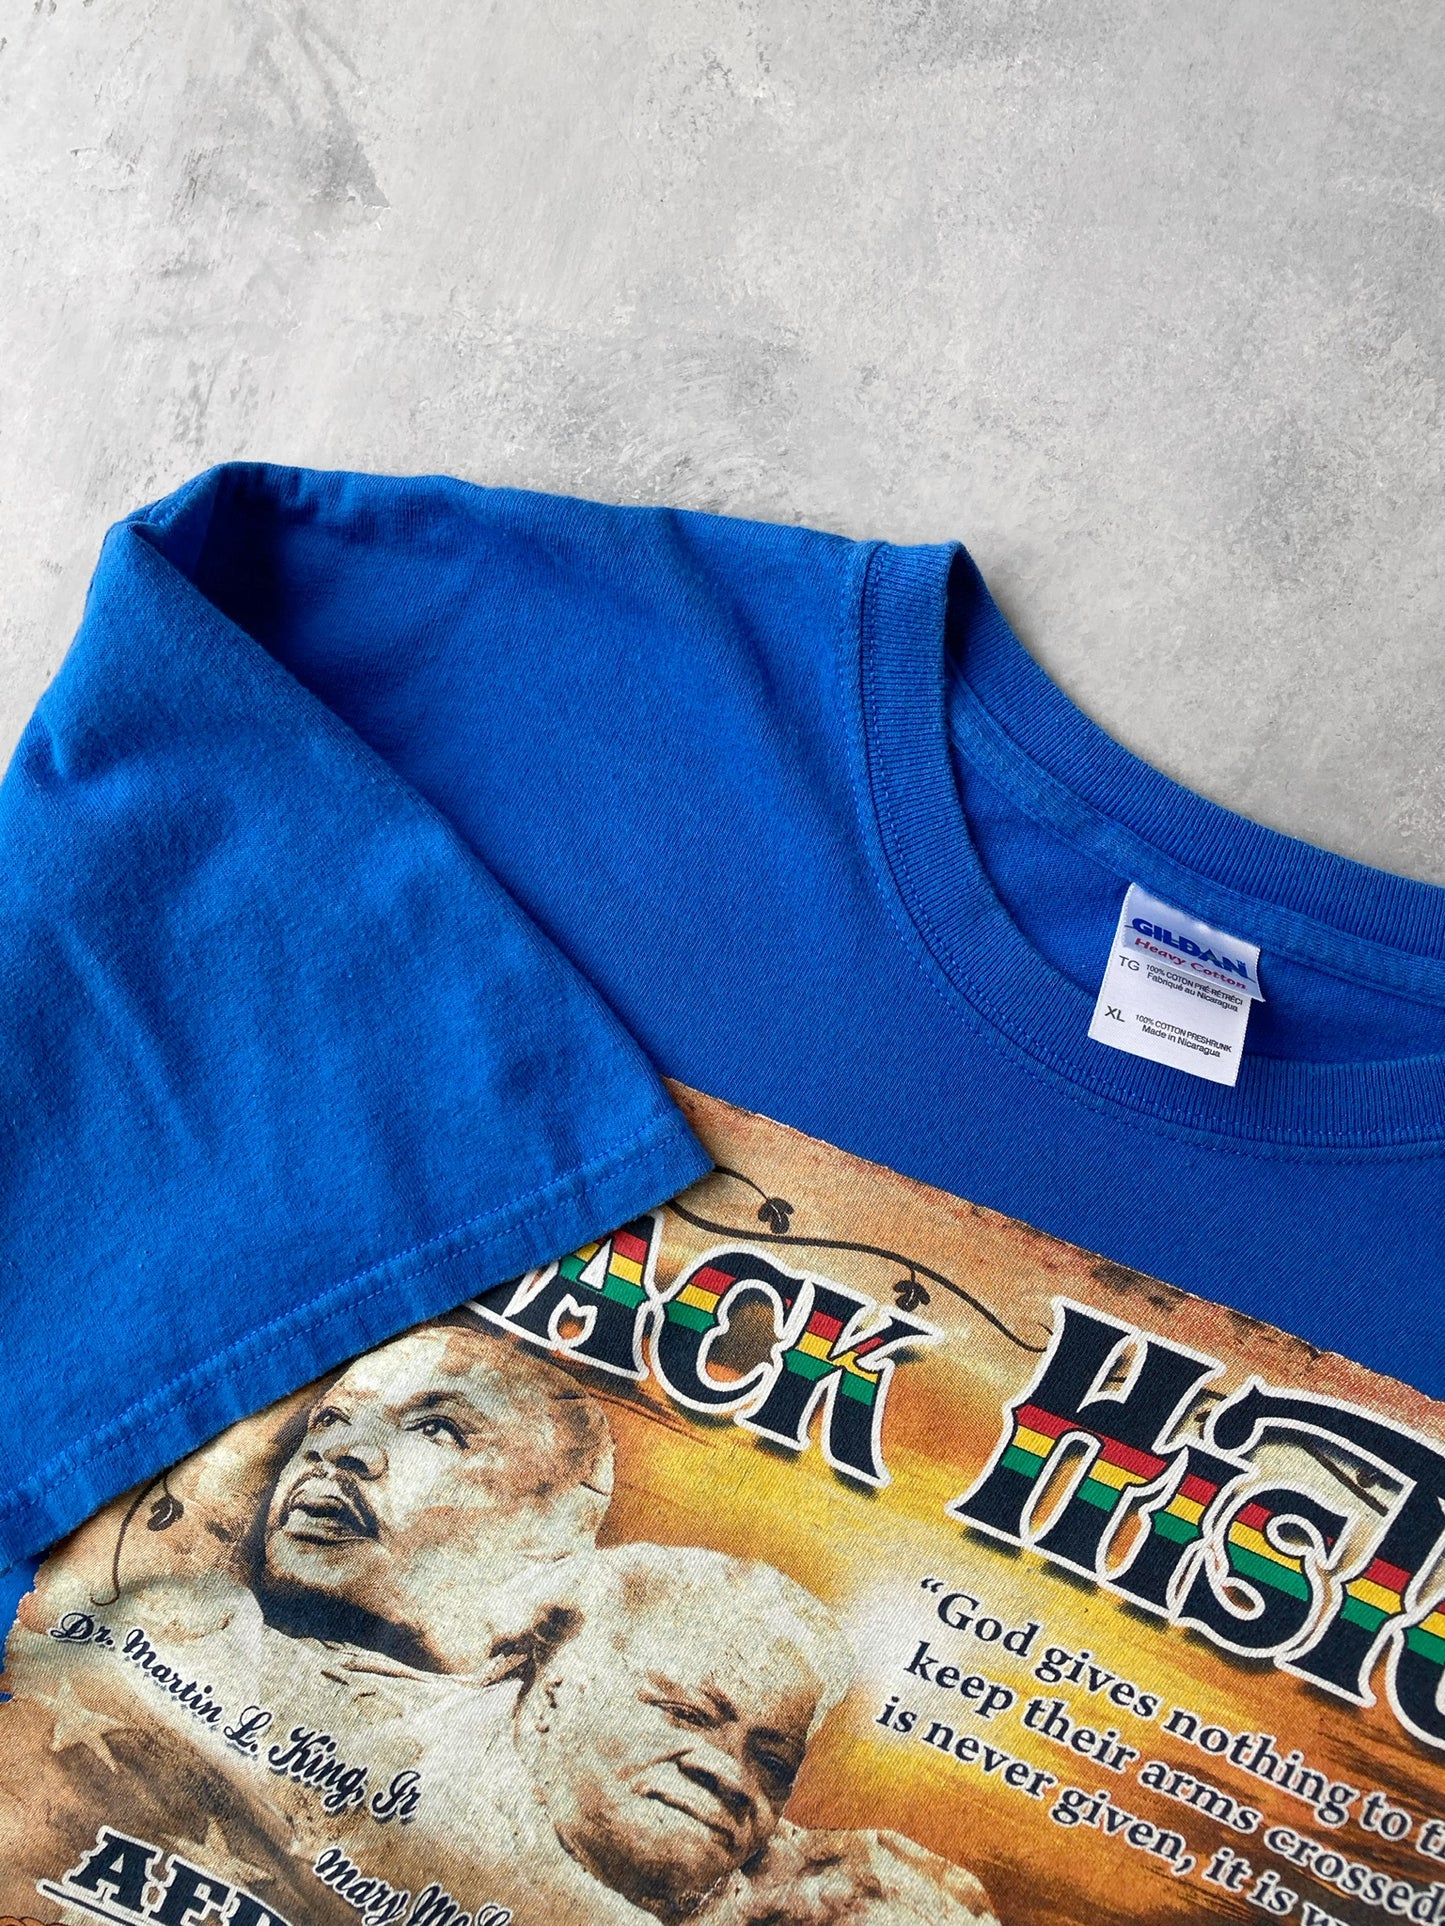 Black History T-Shirt 00's - XL